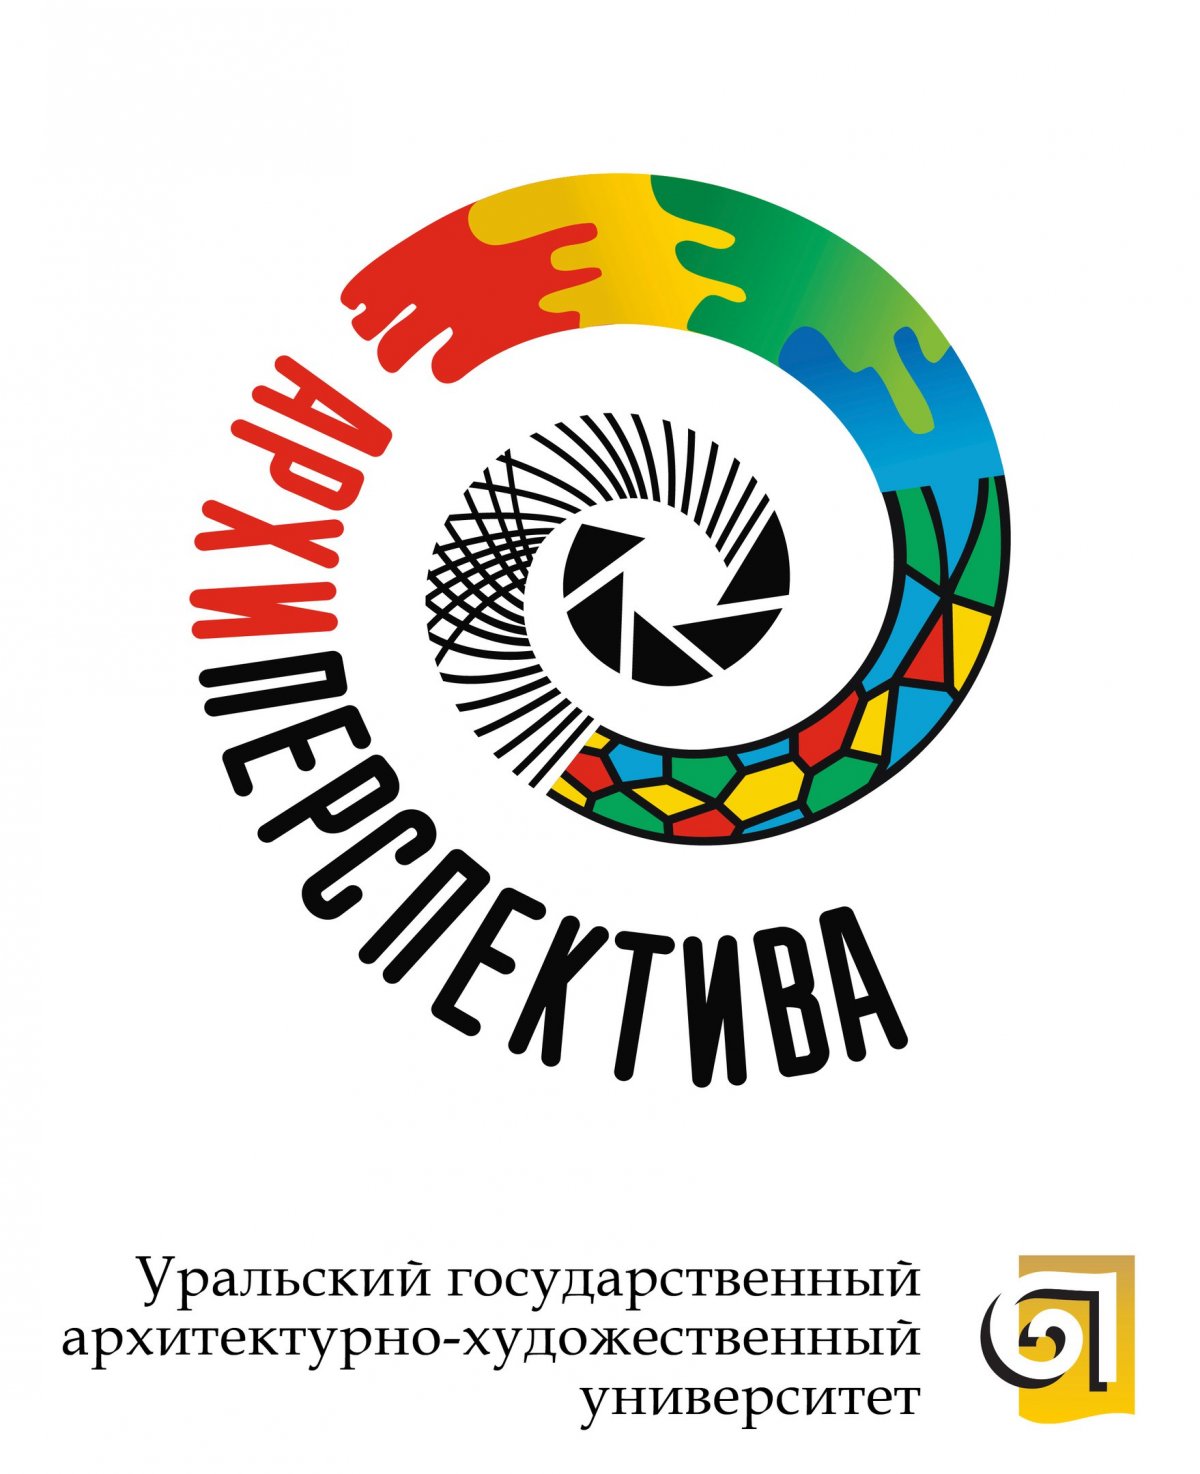 Приглашаем студентов принять участие в конкурсе "Архиперспектива-2019" (информация - в приложении).